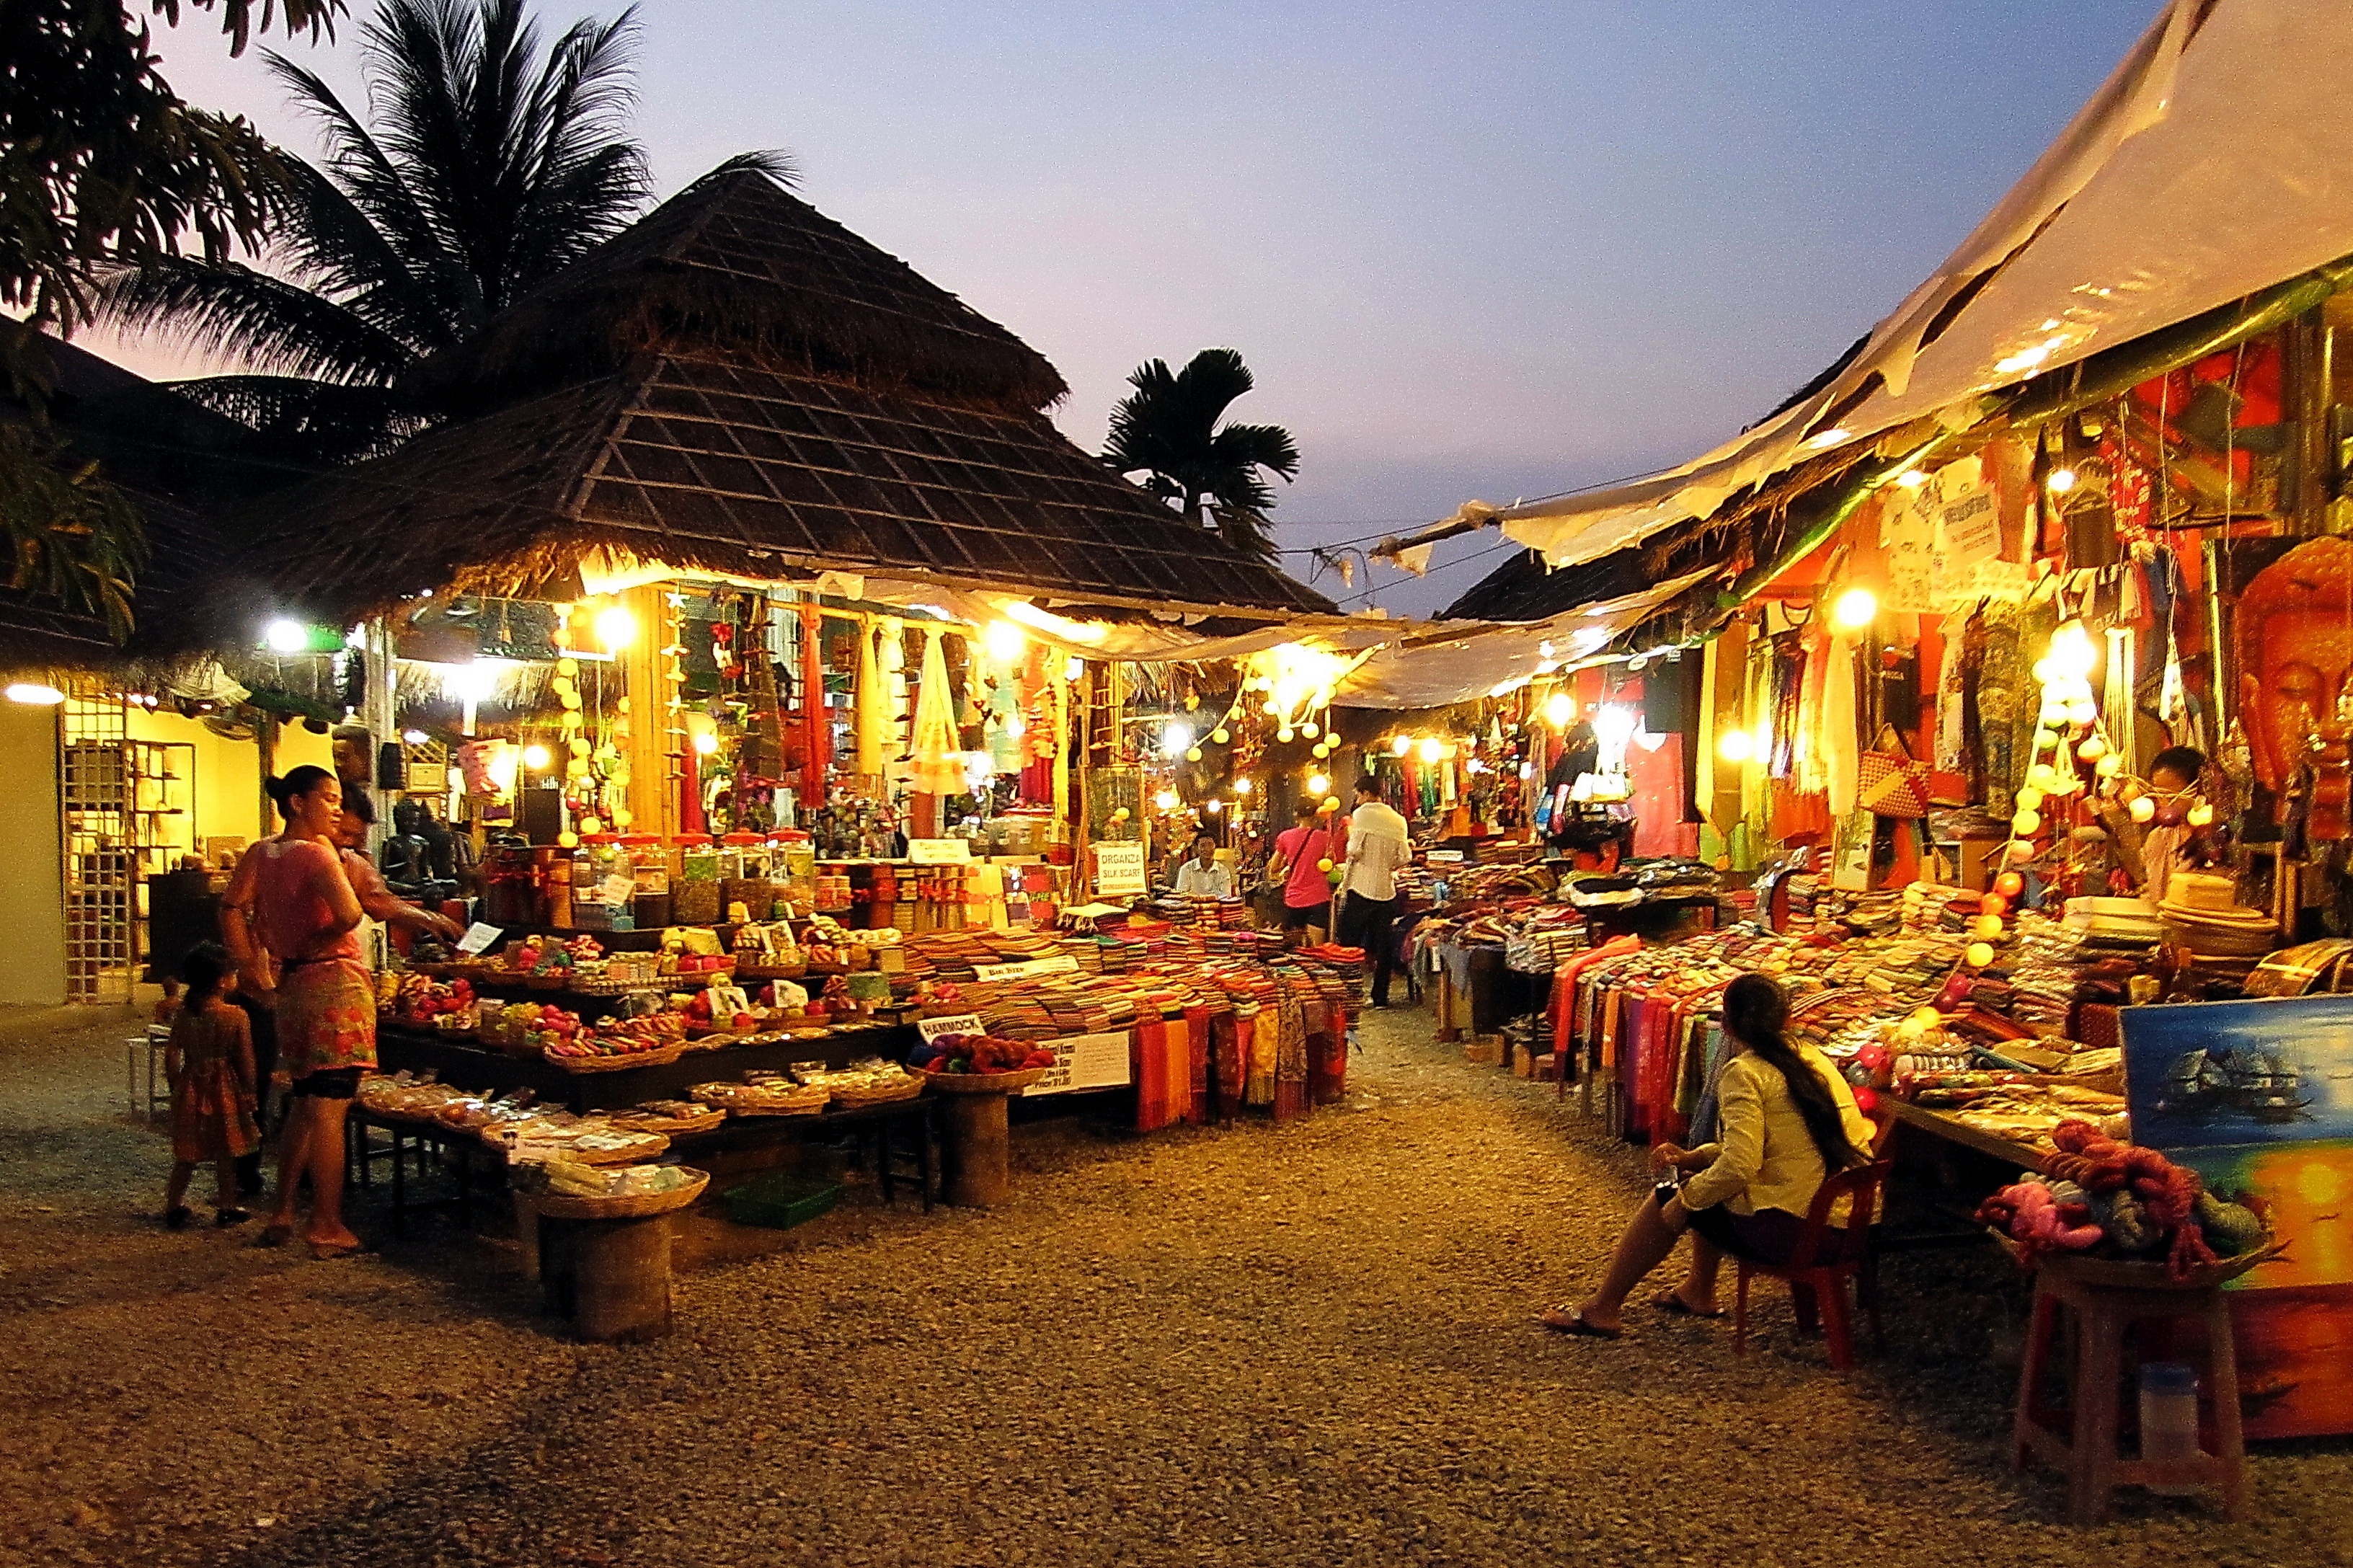 File:Night Market - panoramio.jpg - Wikimedia Commons